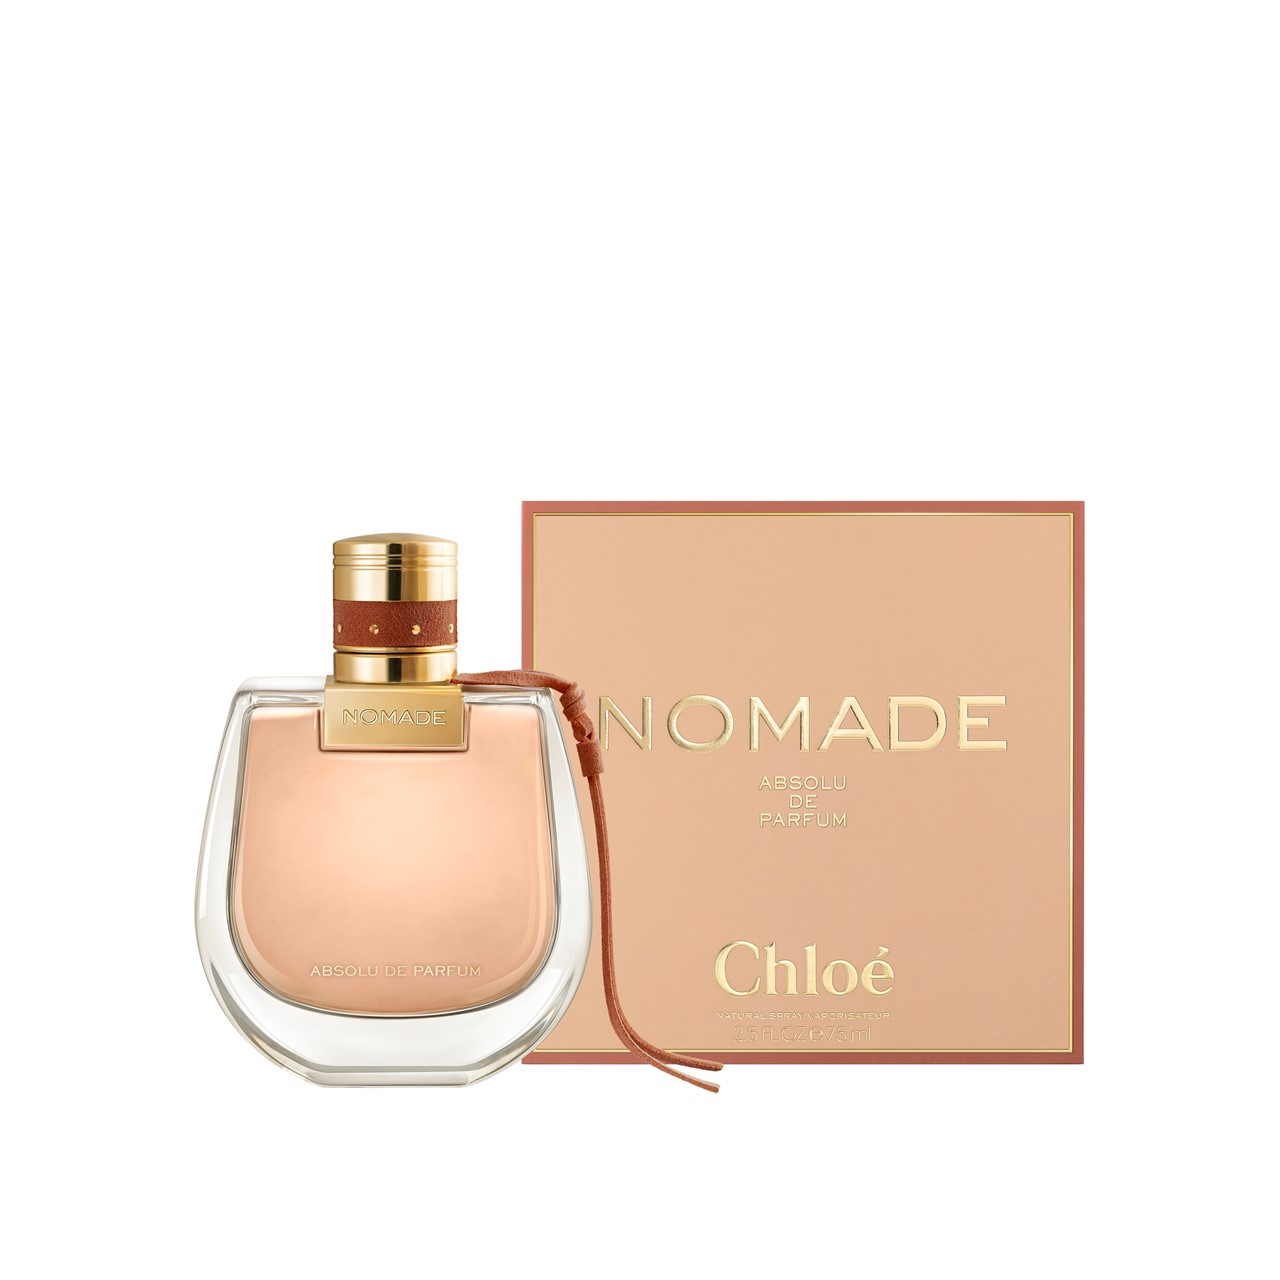 Buy Chloé Nomade Absolu Eau de Parfum 75ml · España